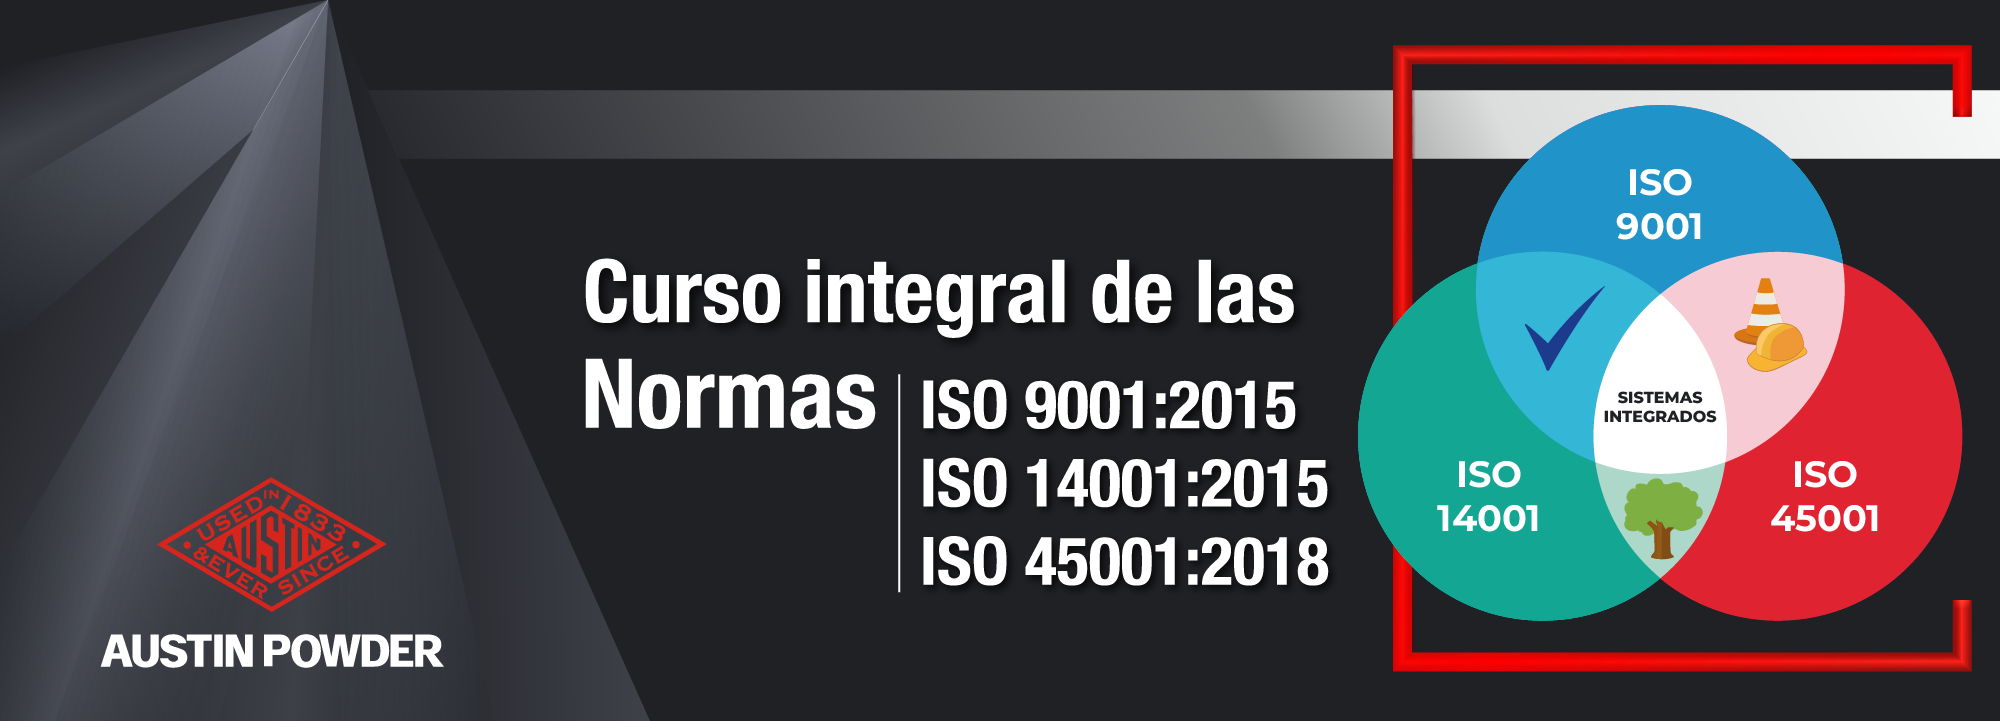 Curso integral de las Normas ISO 9001:2015, ISO 14001:2015 e ISO 45001:2018 APT-0003